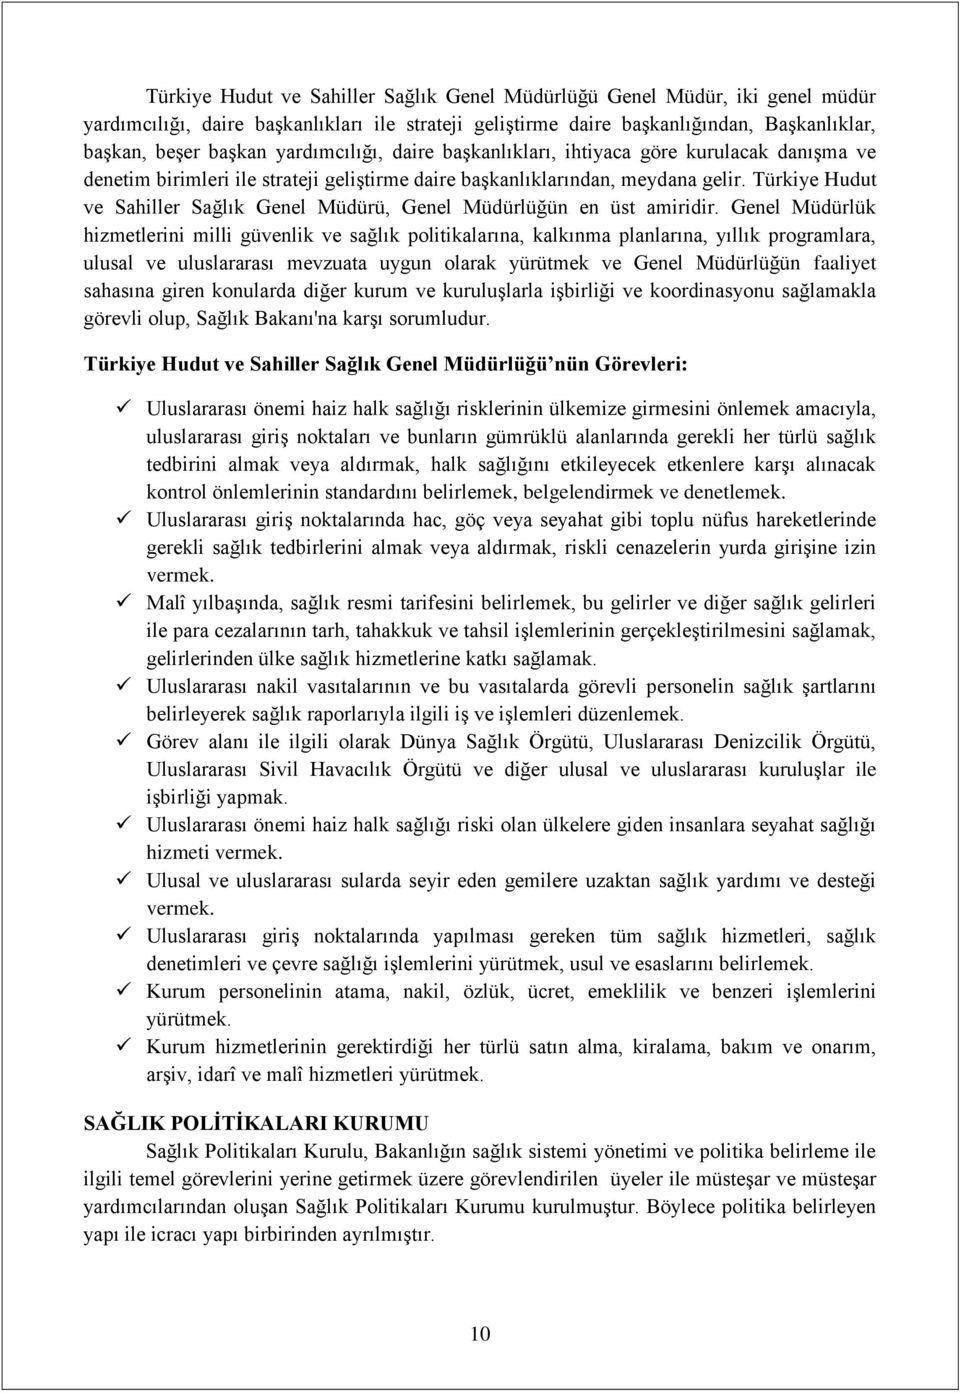 Türkiye Hudut ve Sahiller Sağlık Genel Müdürü, Genel Müdürlüğün en üst amiridir.